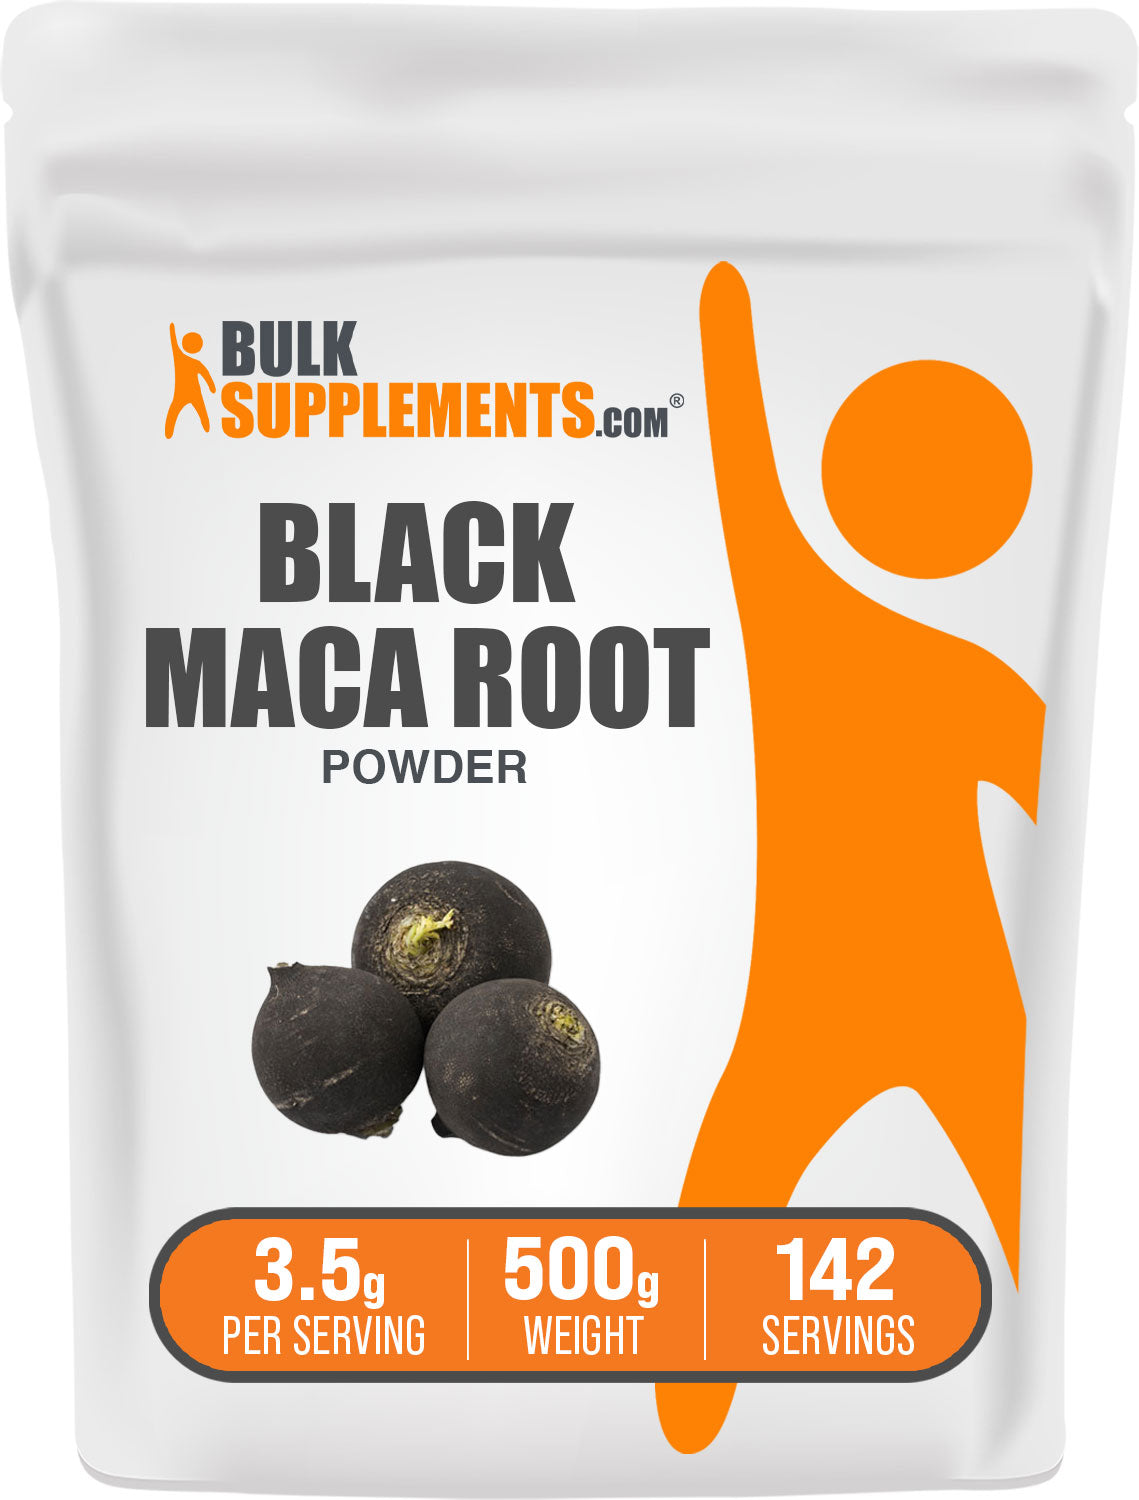 500g bag of black maca